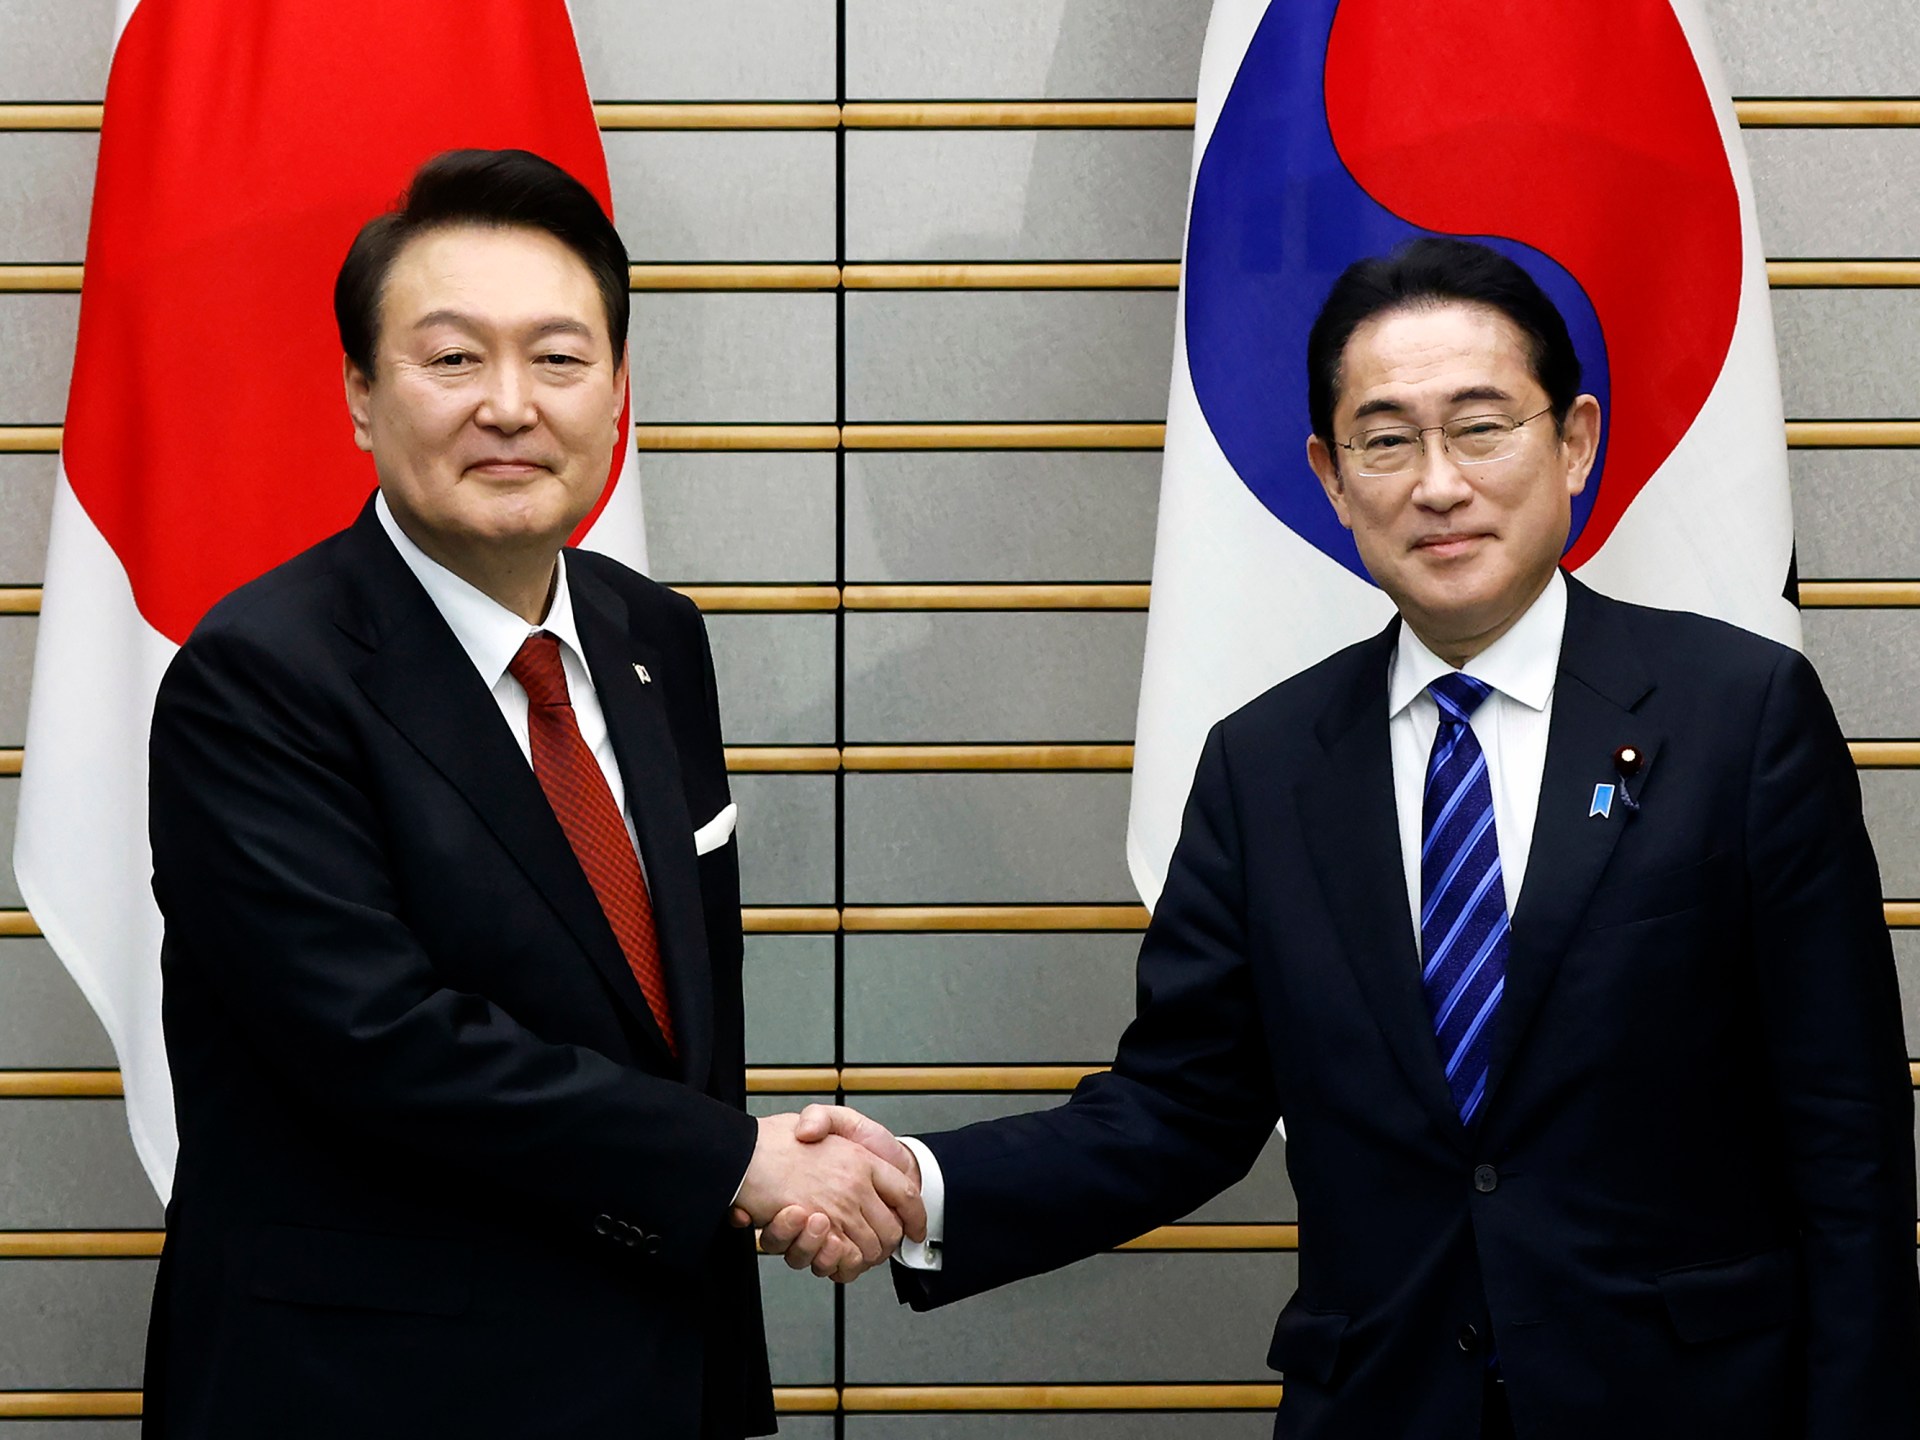 Korea Selatan mengembalikan Jepang ke daftar putih perdagangan di tengah hubungan panas |  Ekonomi